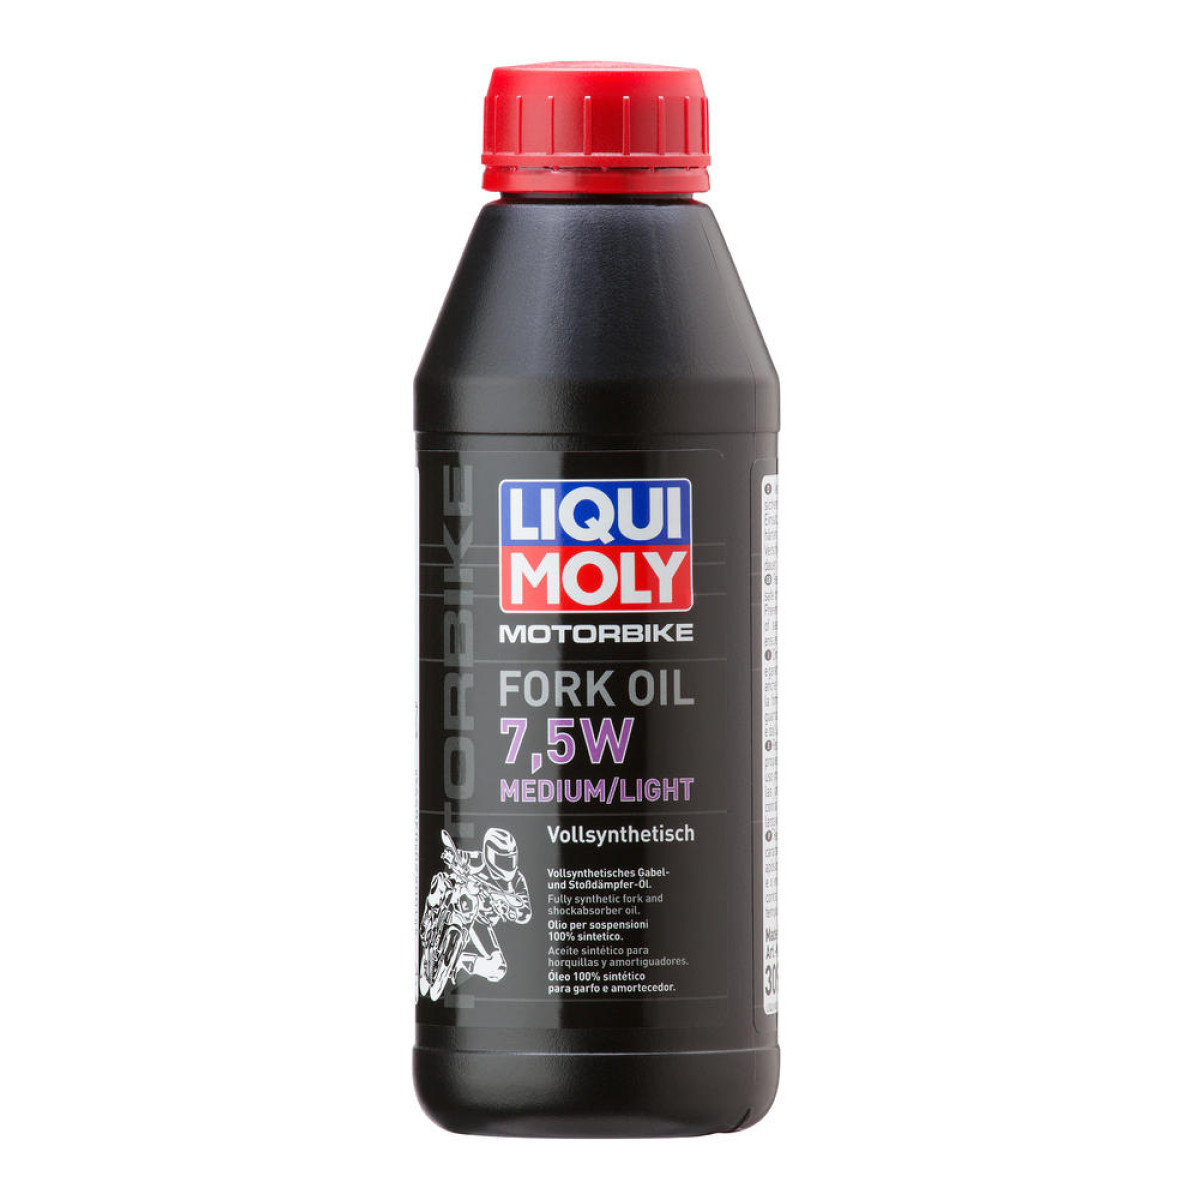 Liqui Moly Gear Öl  Medium/Light, 7.5W, 1 Liter